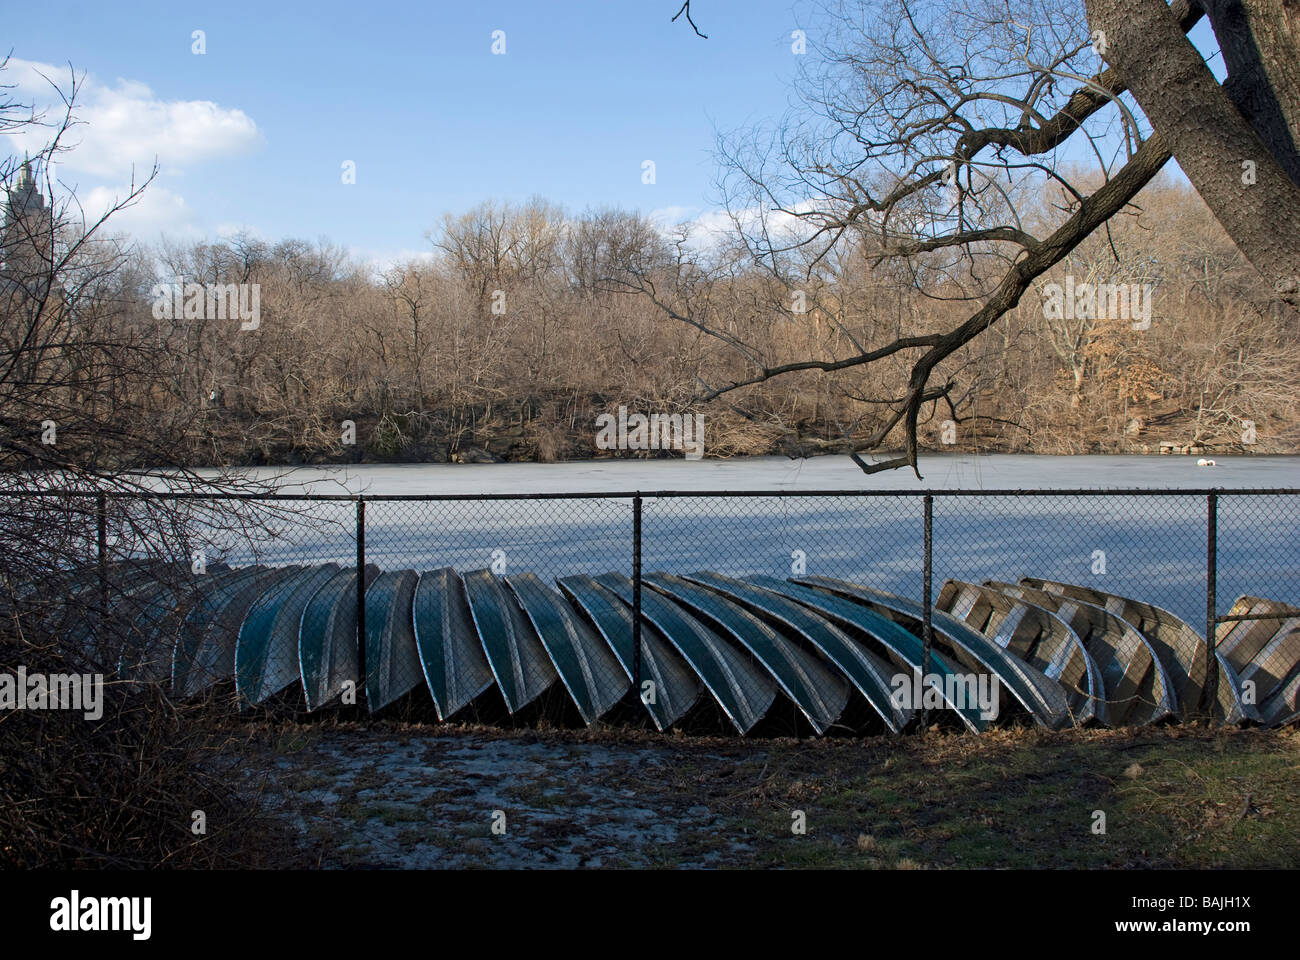 Central Park See Boote horizontalen Szene gefrorenen Wintersaison design im freien Erholung Stadtbild New York Skyline Tourismus Stockfoto